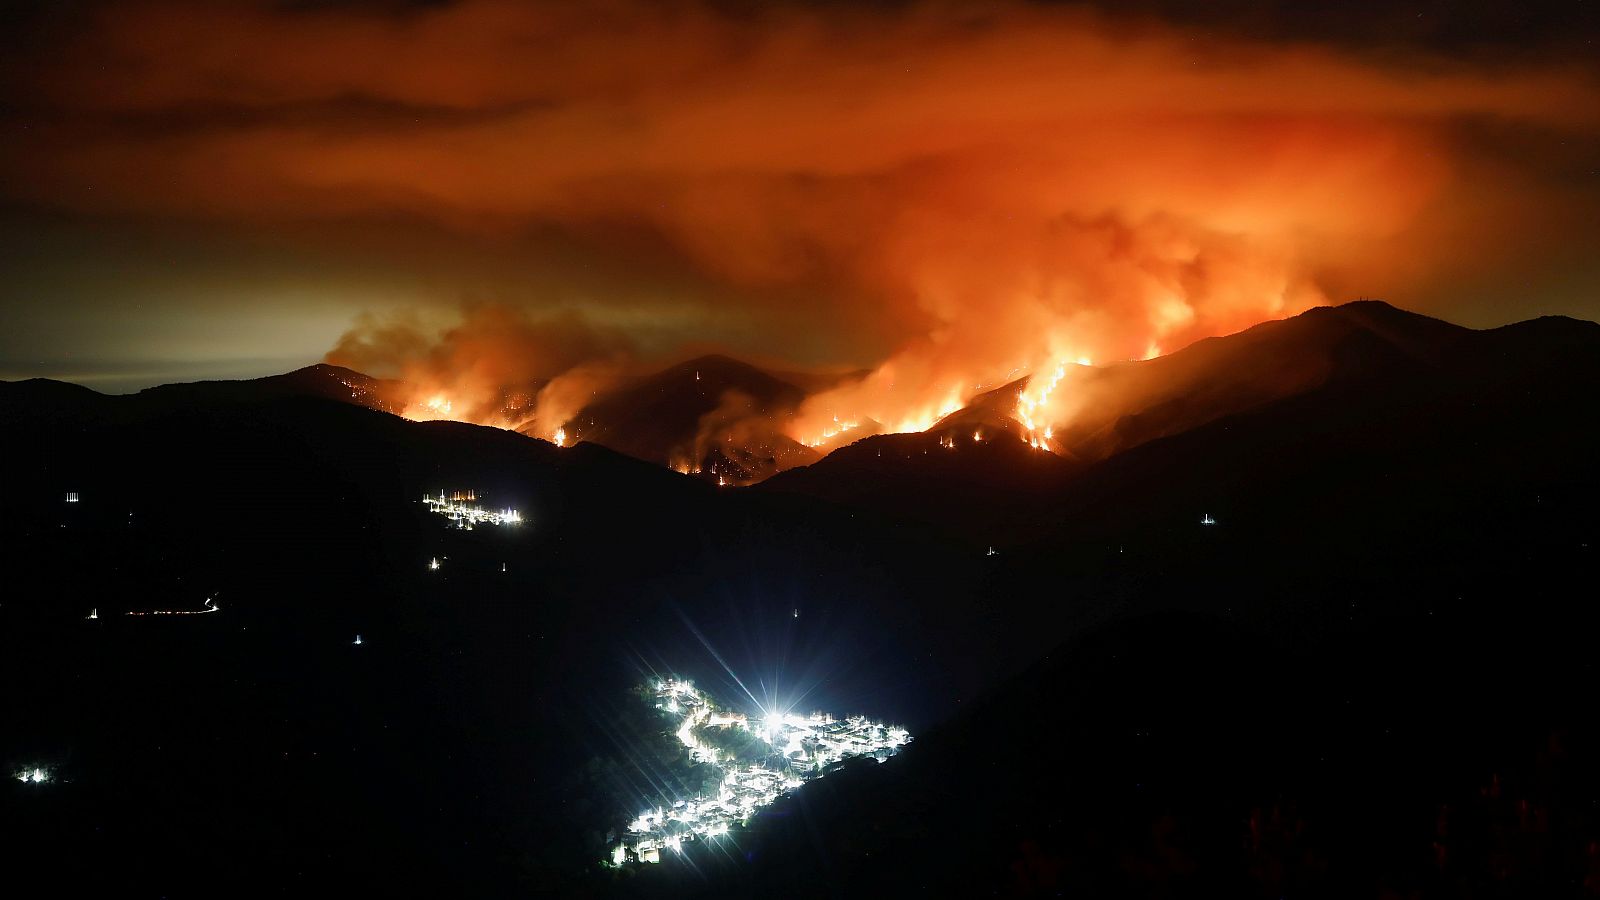 "El incendio de Sierra Bermeja tiene vida propia"